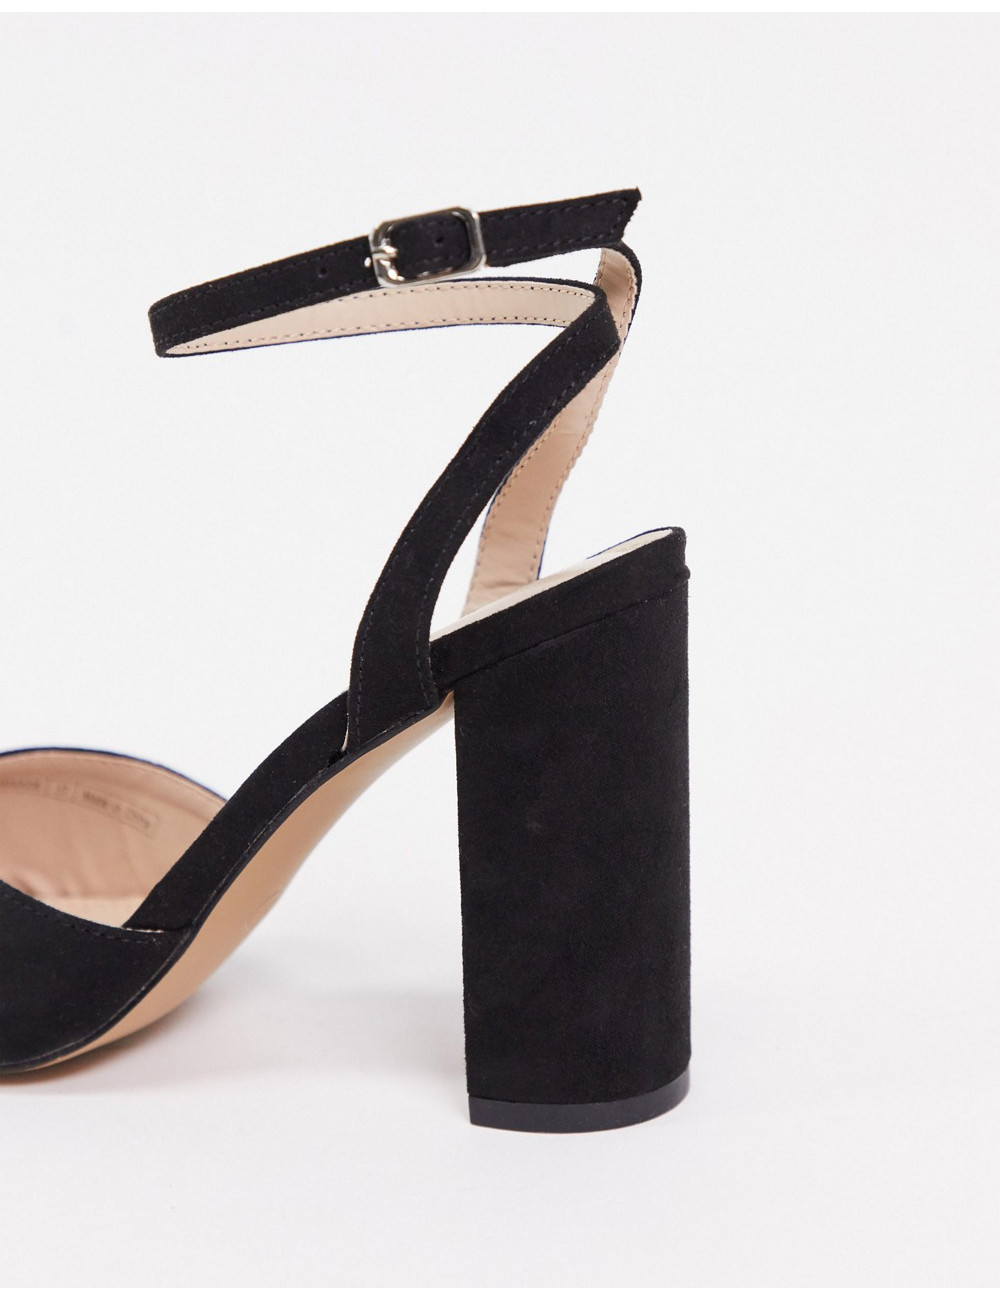 Pimkie heeled shoes in black